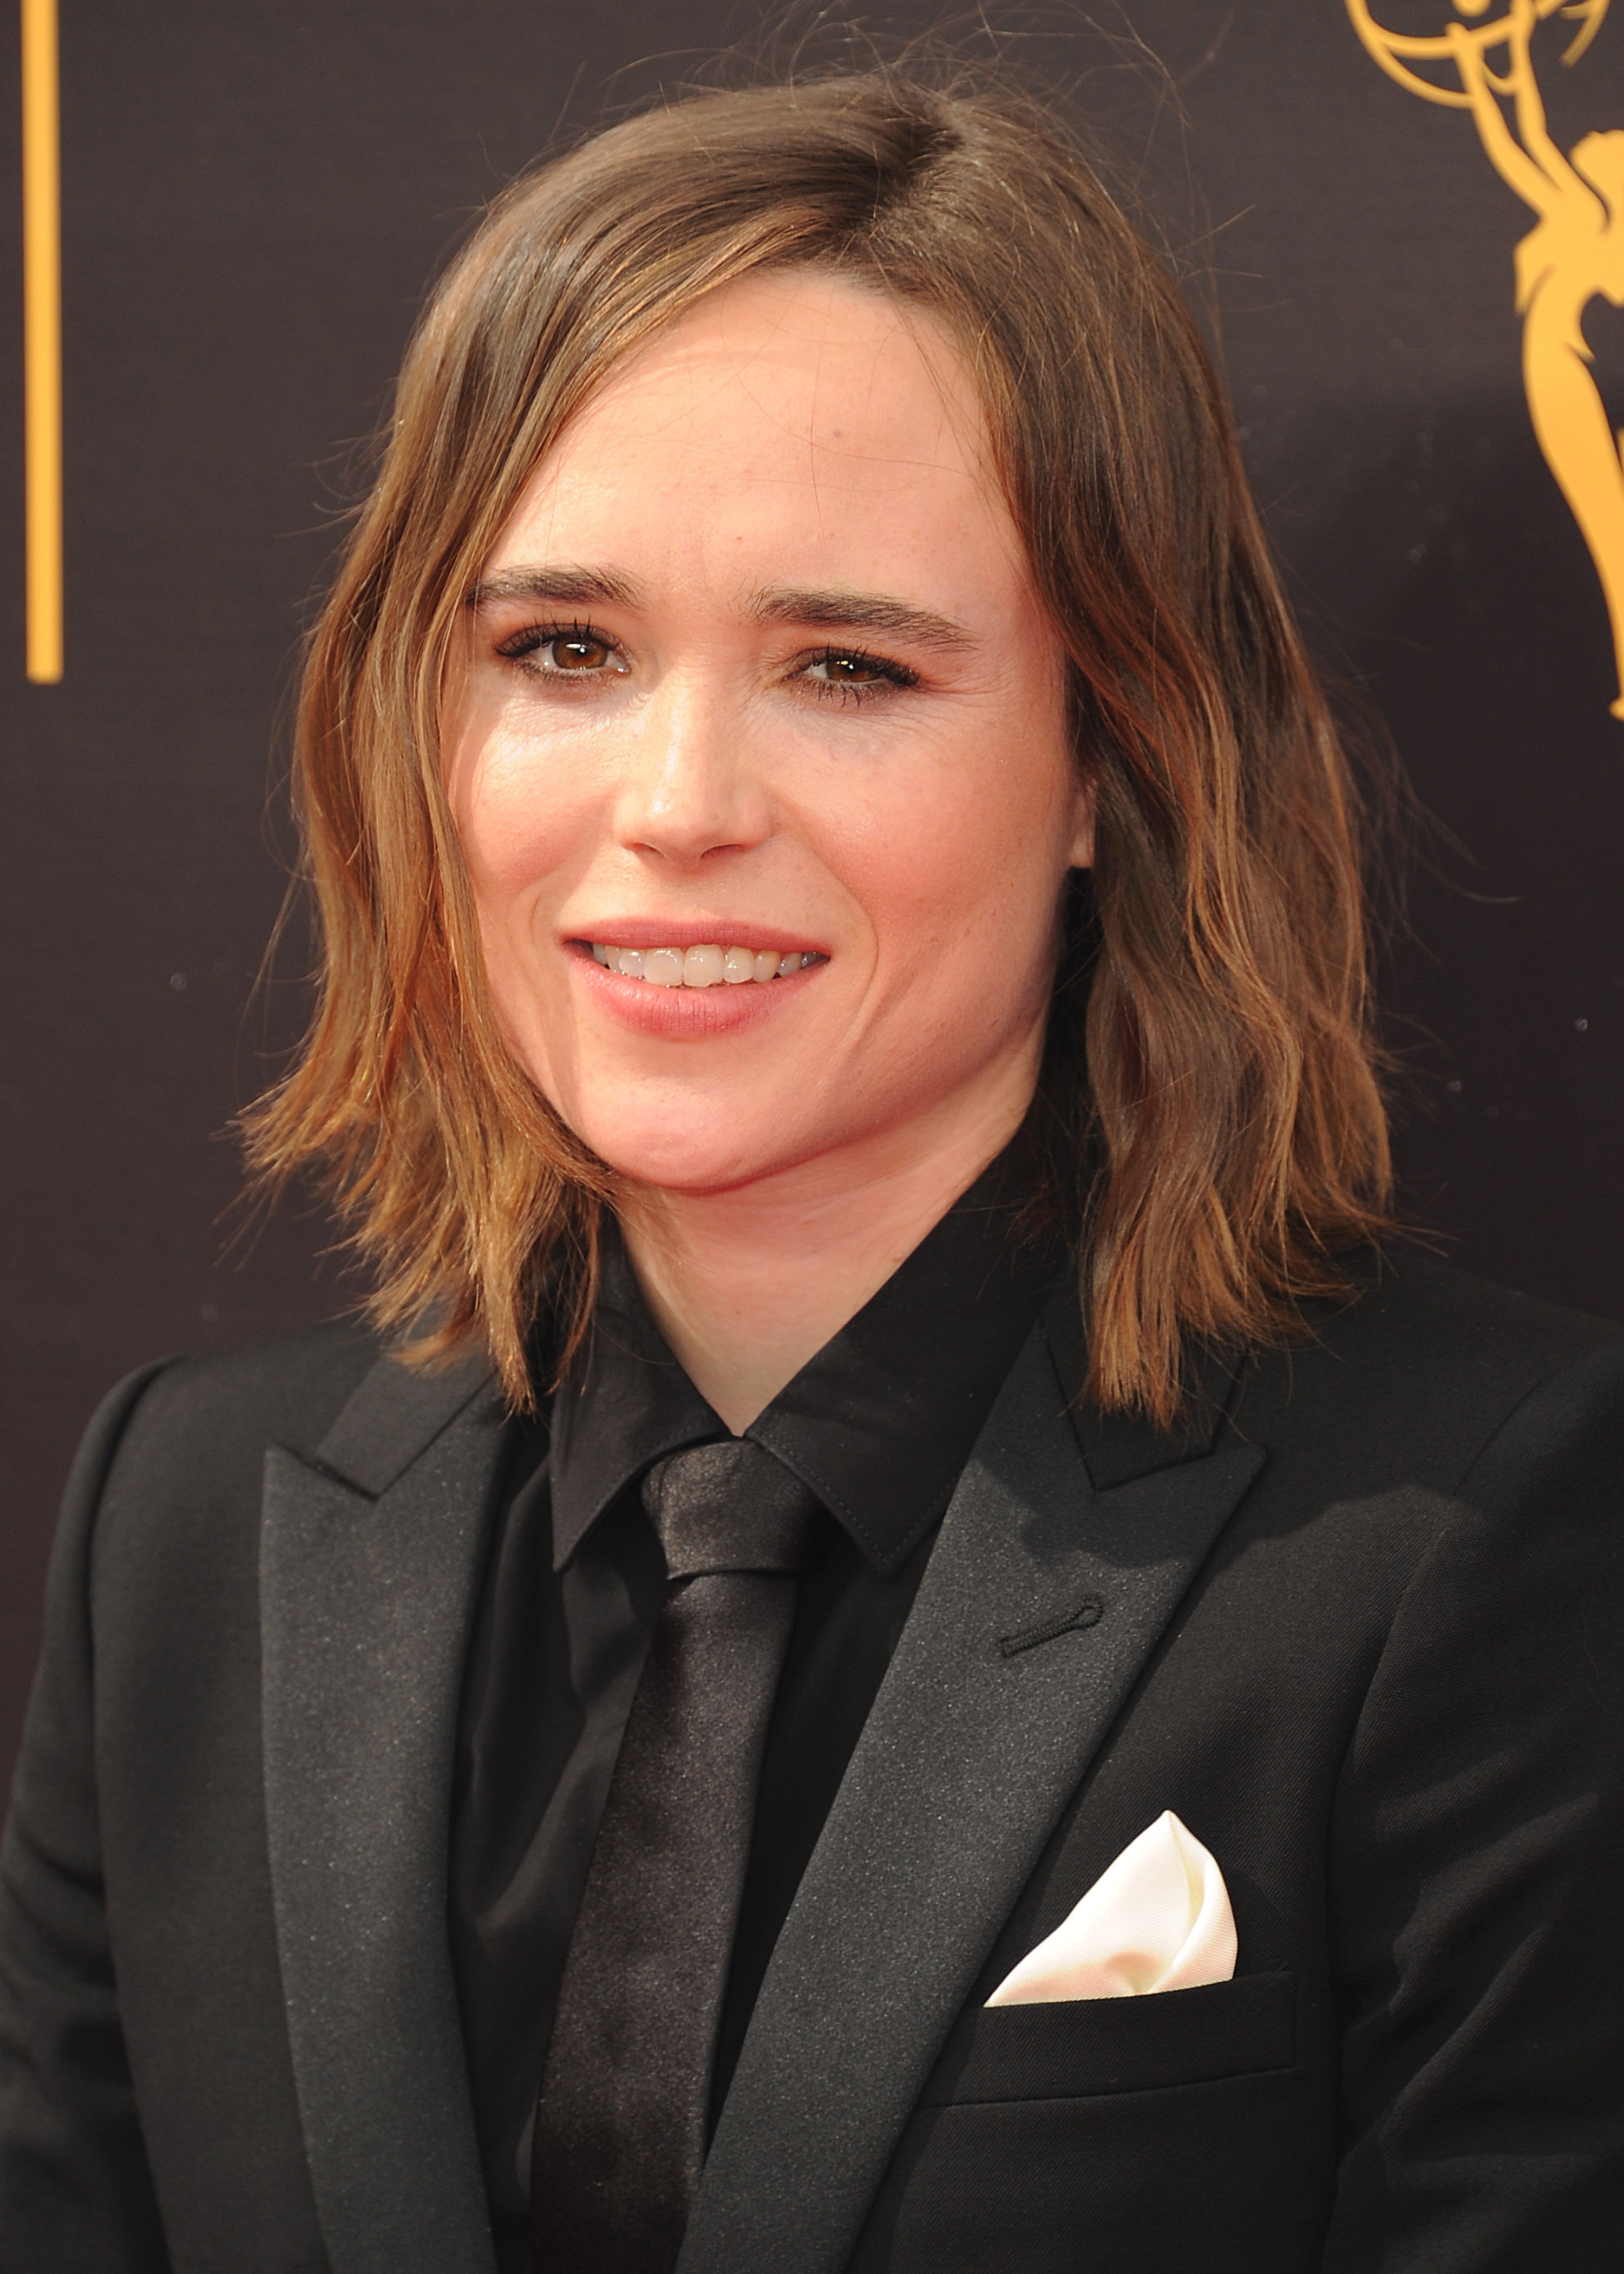 L'actriu Ellen Page ara és Elliot: foto sense roba per mostrar el trànsit a home